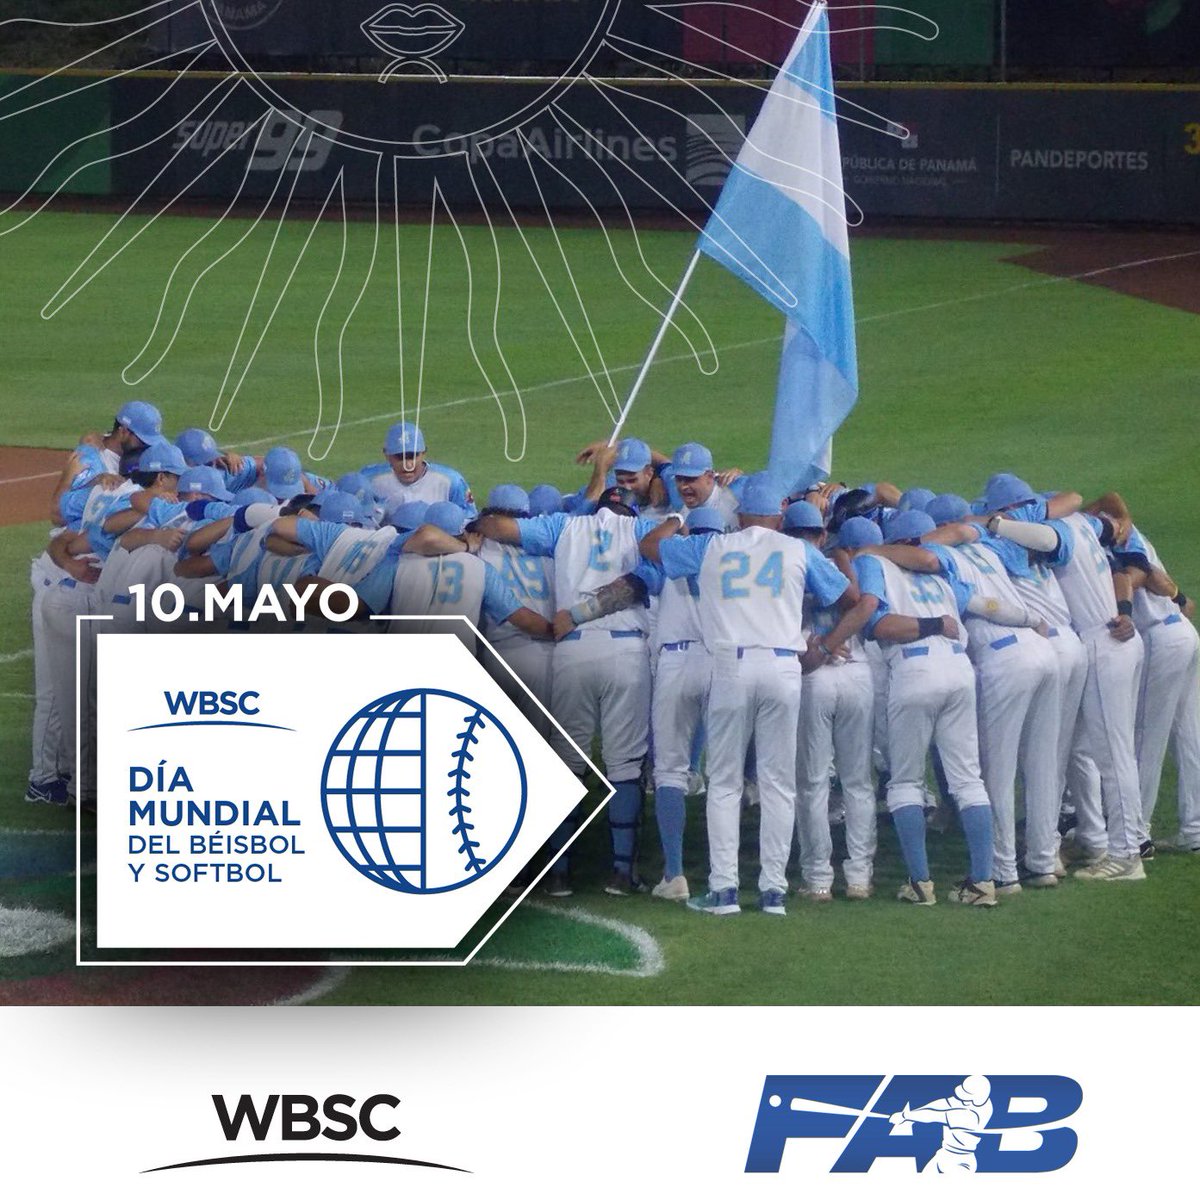 🎉 HOY festejamos el Día de la @WBSC con este gran momento: ARGENTINA EN El WORLD BASEBALL CLASSIC 👉🏻 En el año 2022, junto a @losgauchosarg1, alcanzamos nuestro sueño de jugar las instancias clasificatorias al Clásico Mundial de Béisbol. ⚾️🇦🇷 #BaseballSoftballDay #WBSD